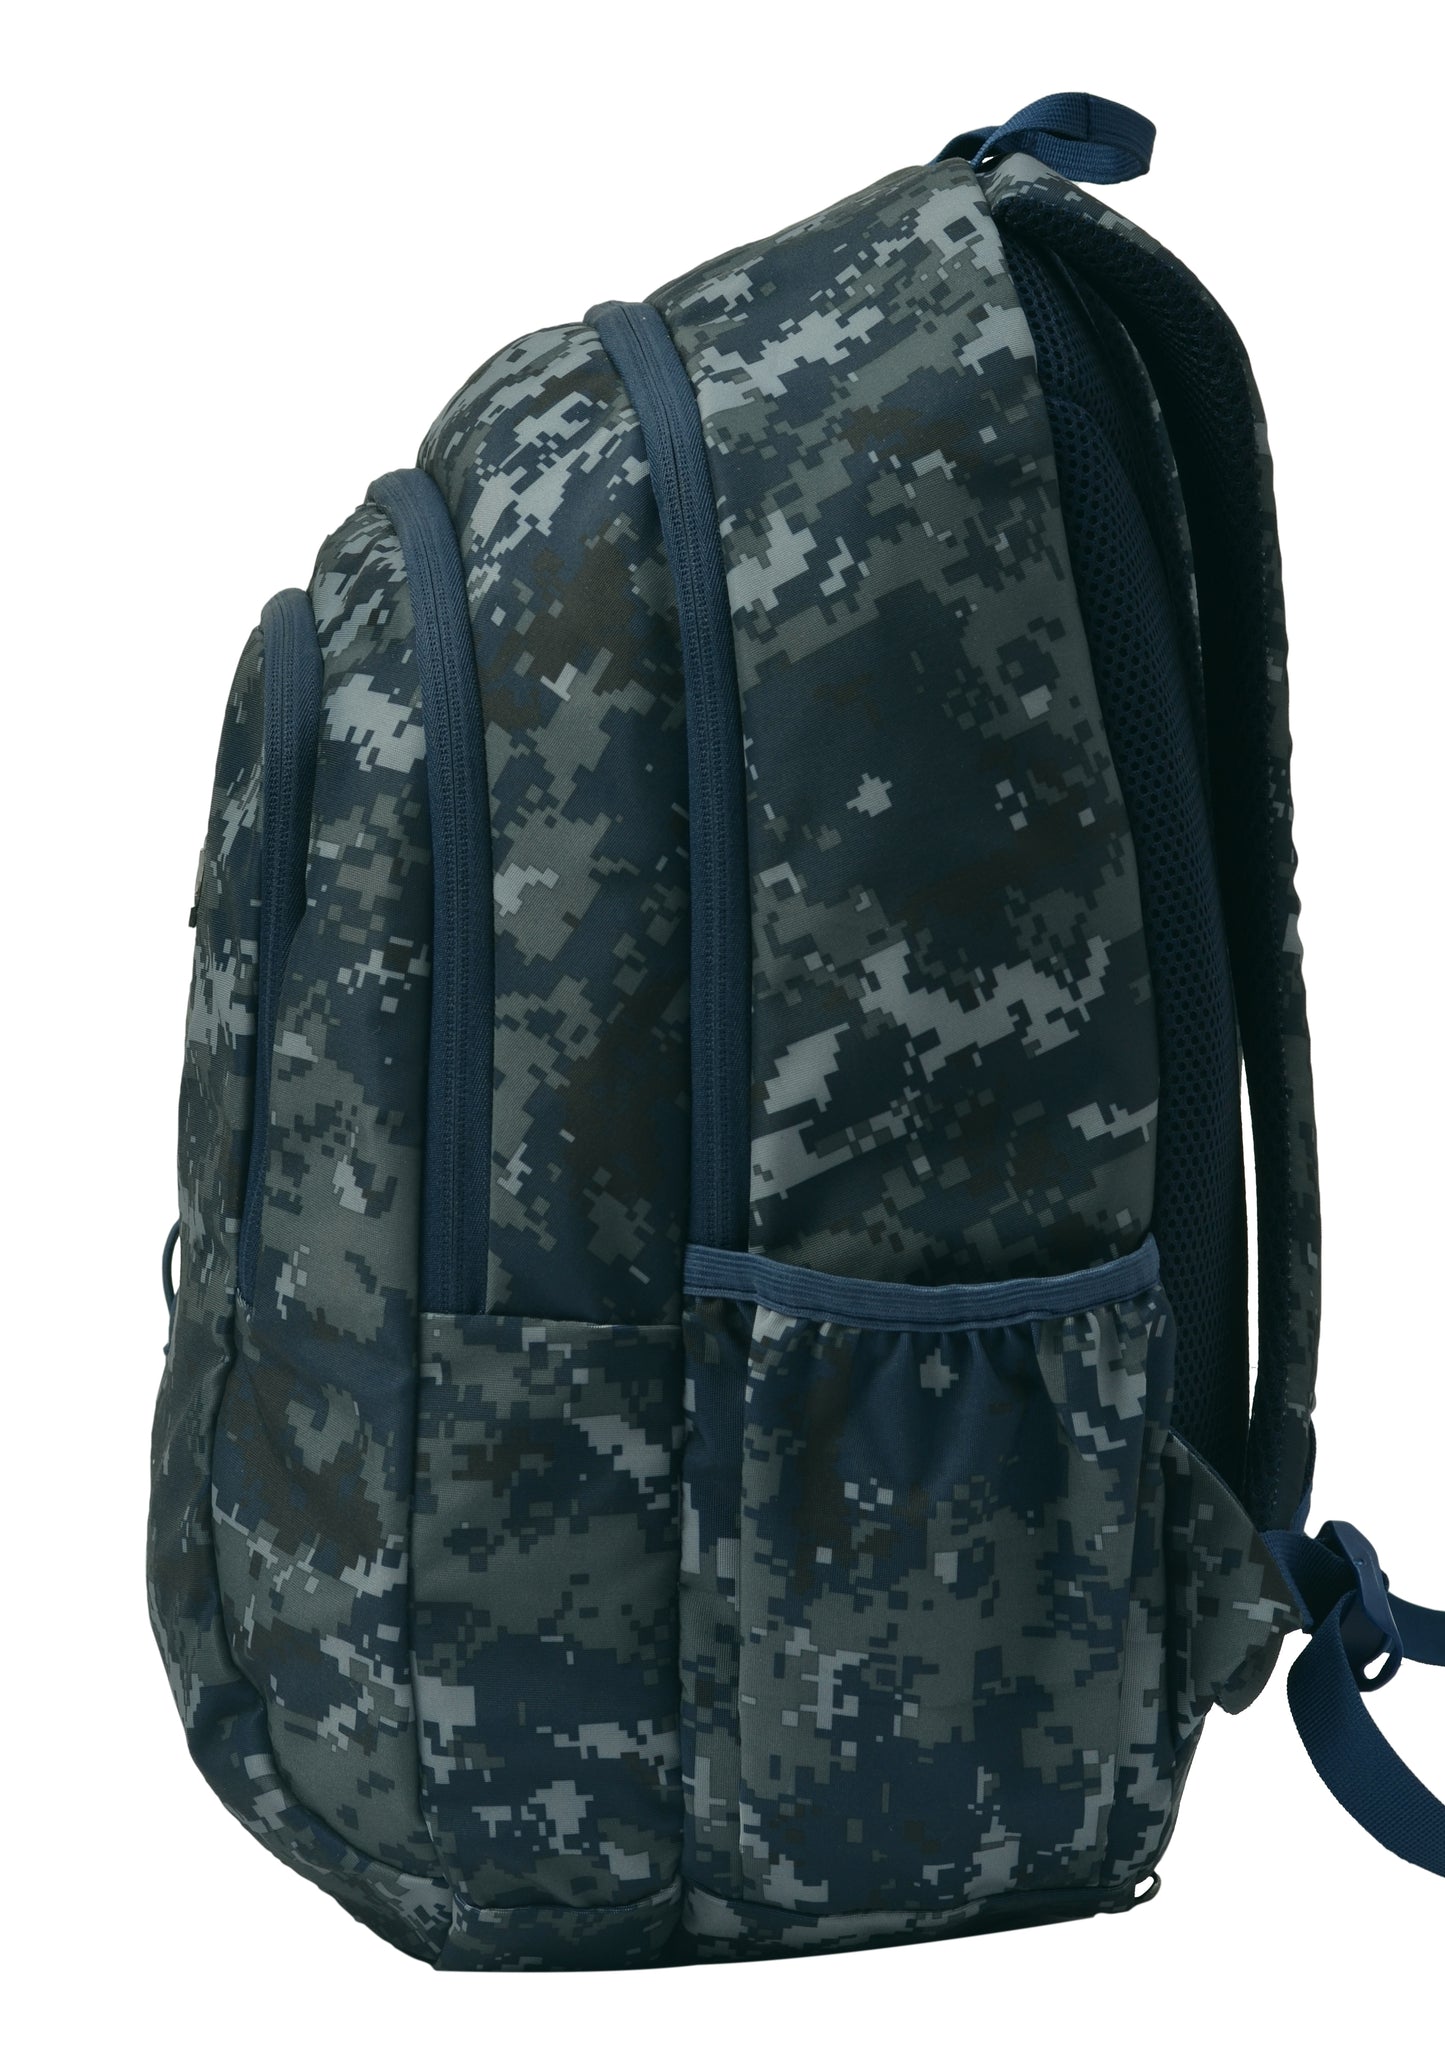 Military Crusader 30L Marpat Navy Digital Camo Backpack